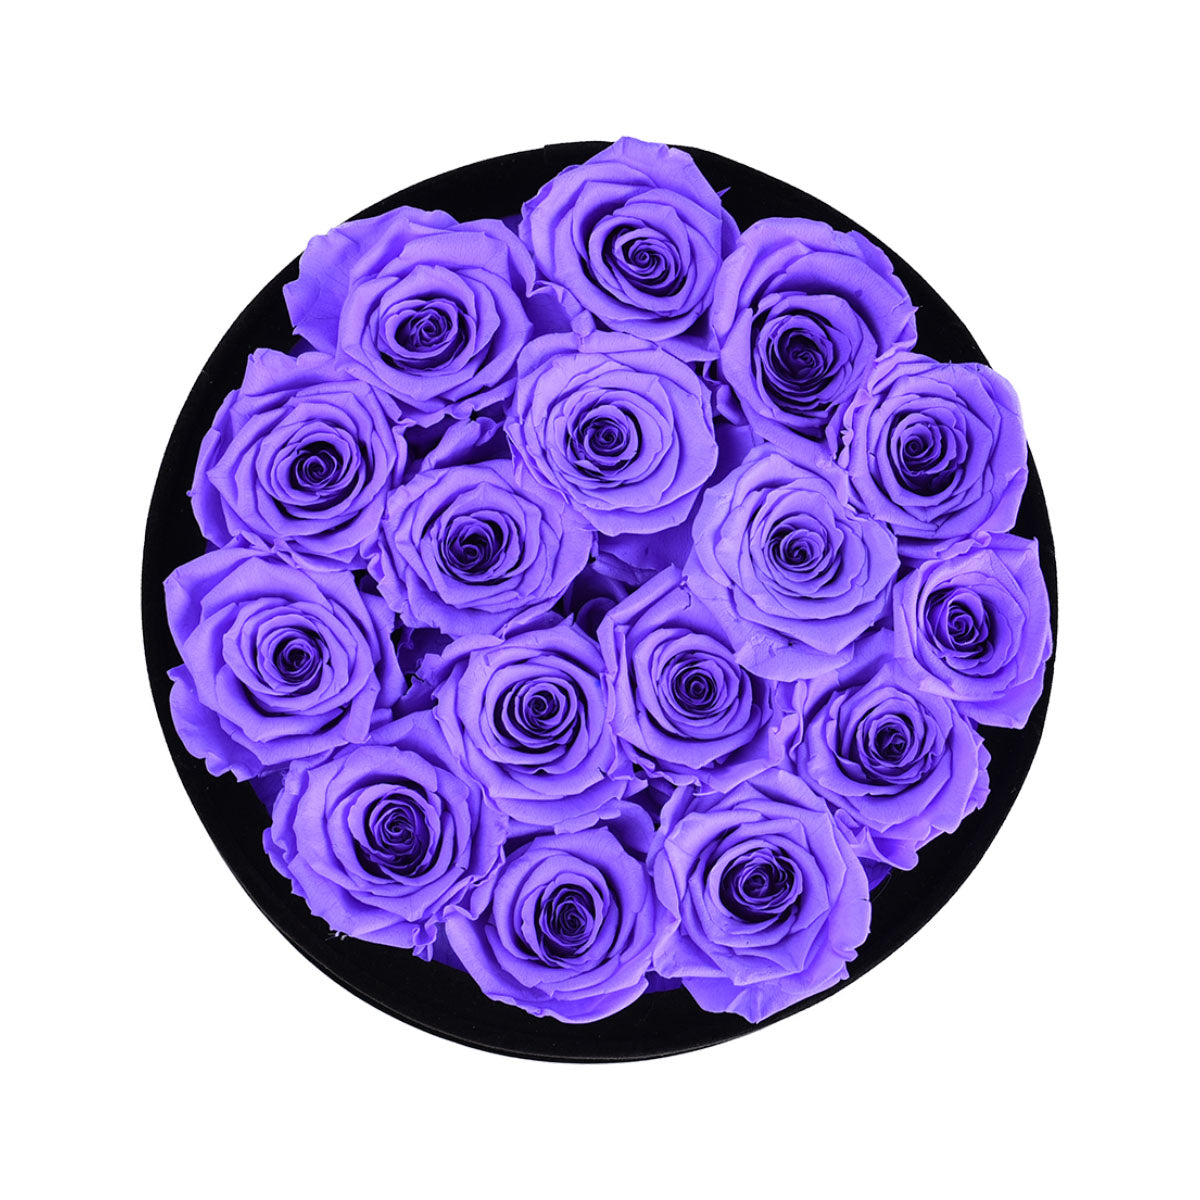 Passion Black Velvet Lavender 16 | Rose Forever 